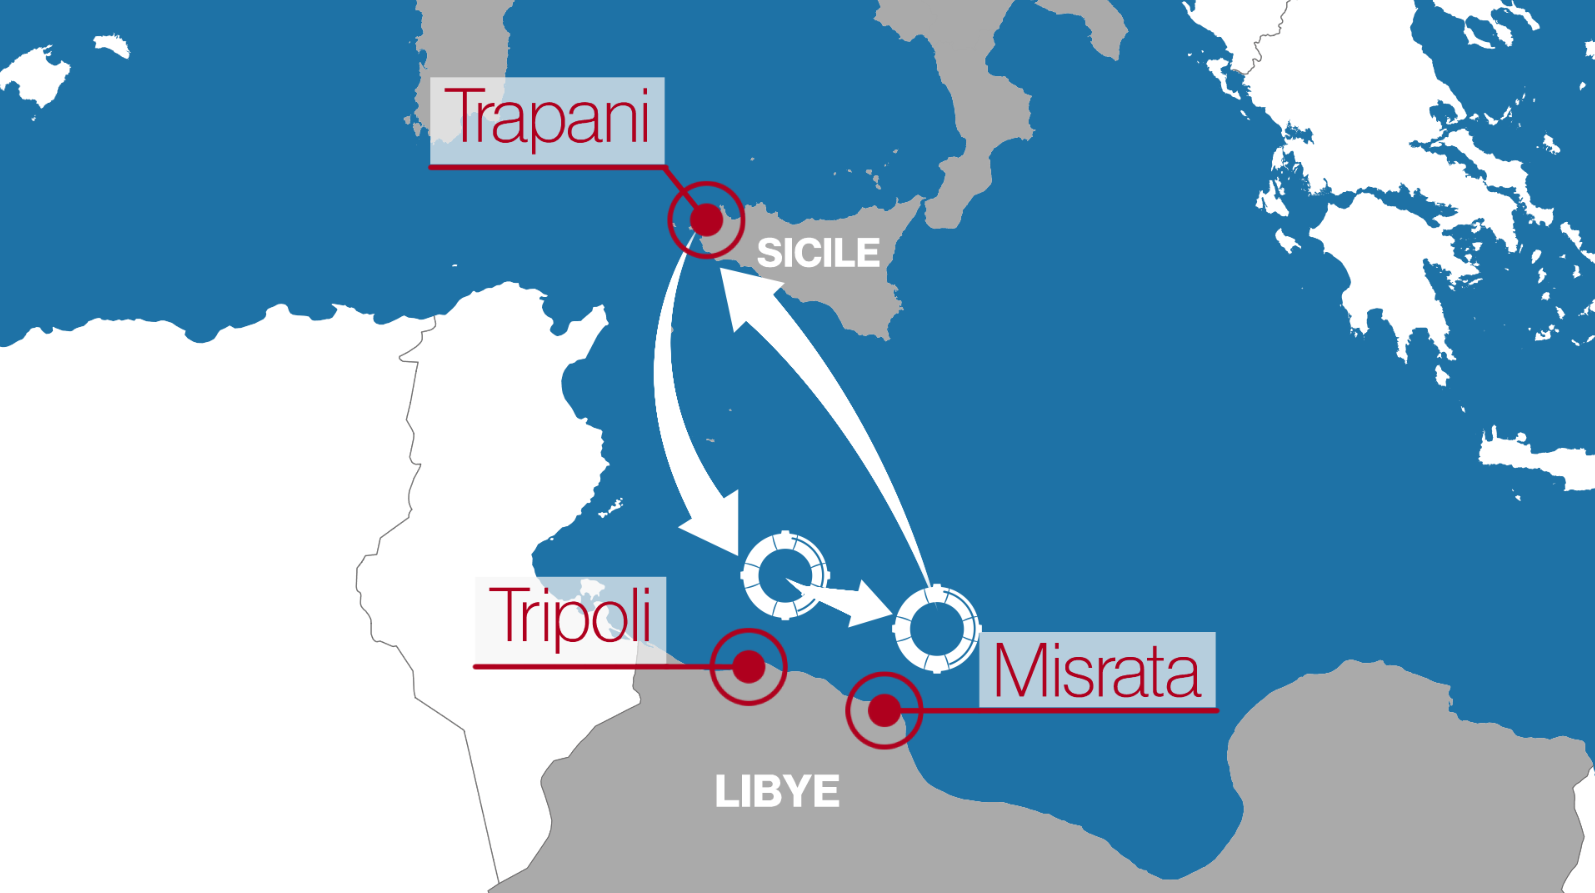 Le parcours du bateau Vos Hestia, de l'ONG Save the children, entre la Sicile et la Libye. [RTS]